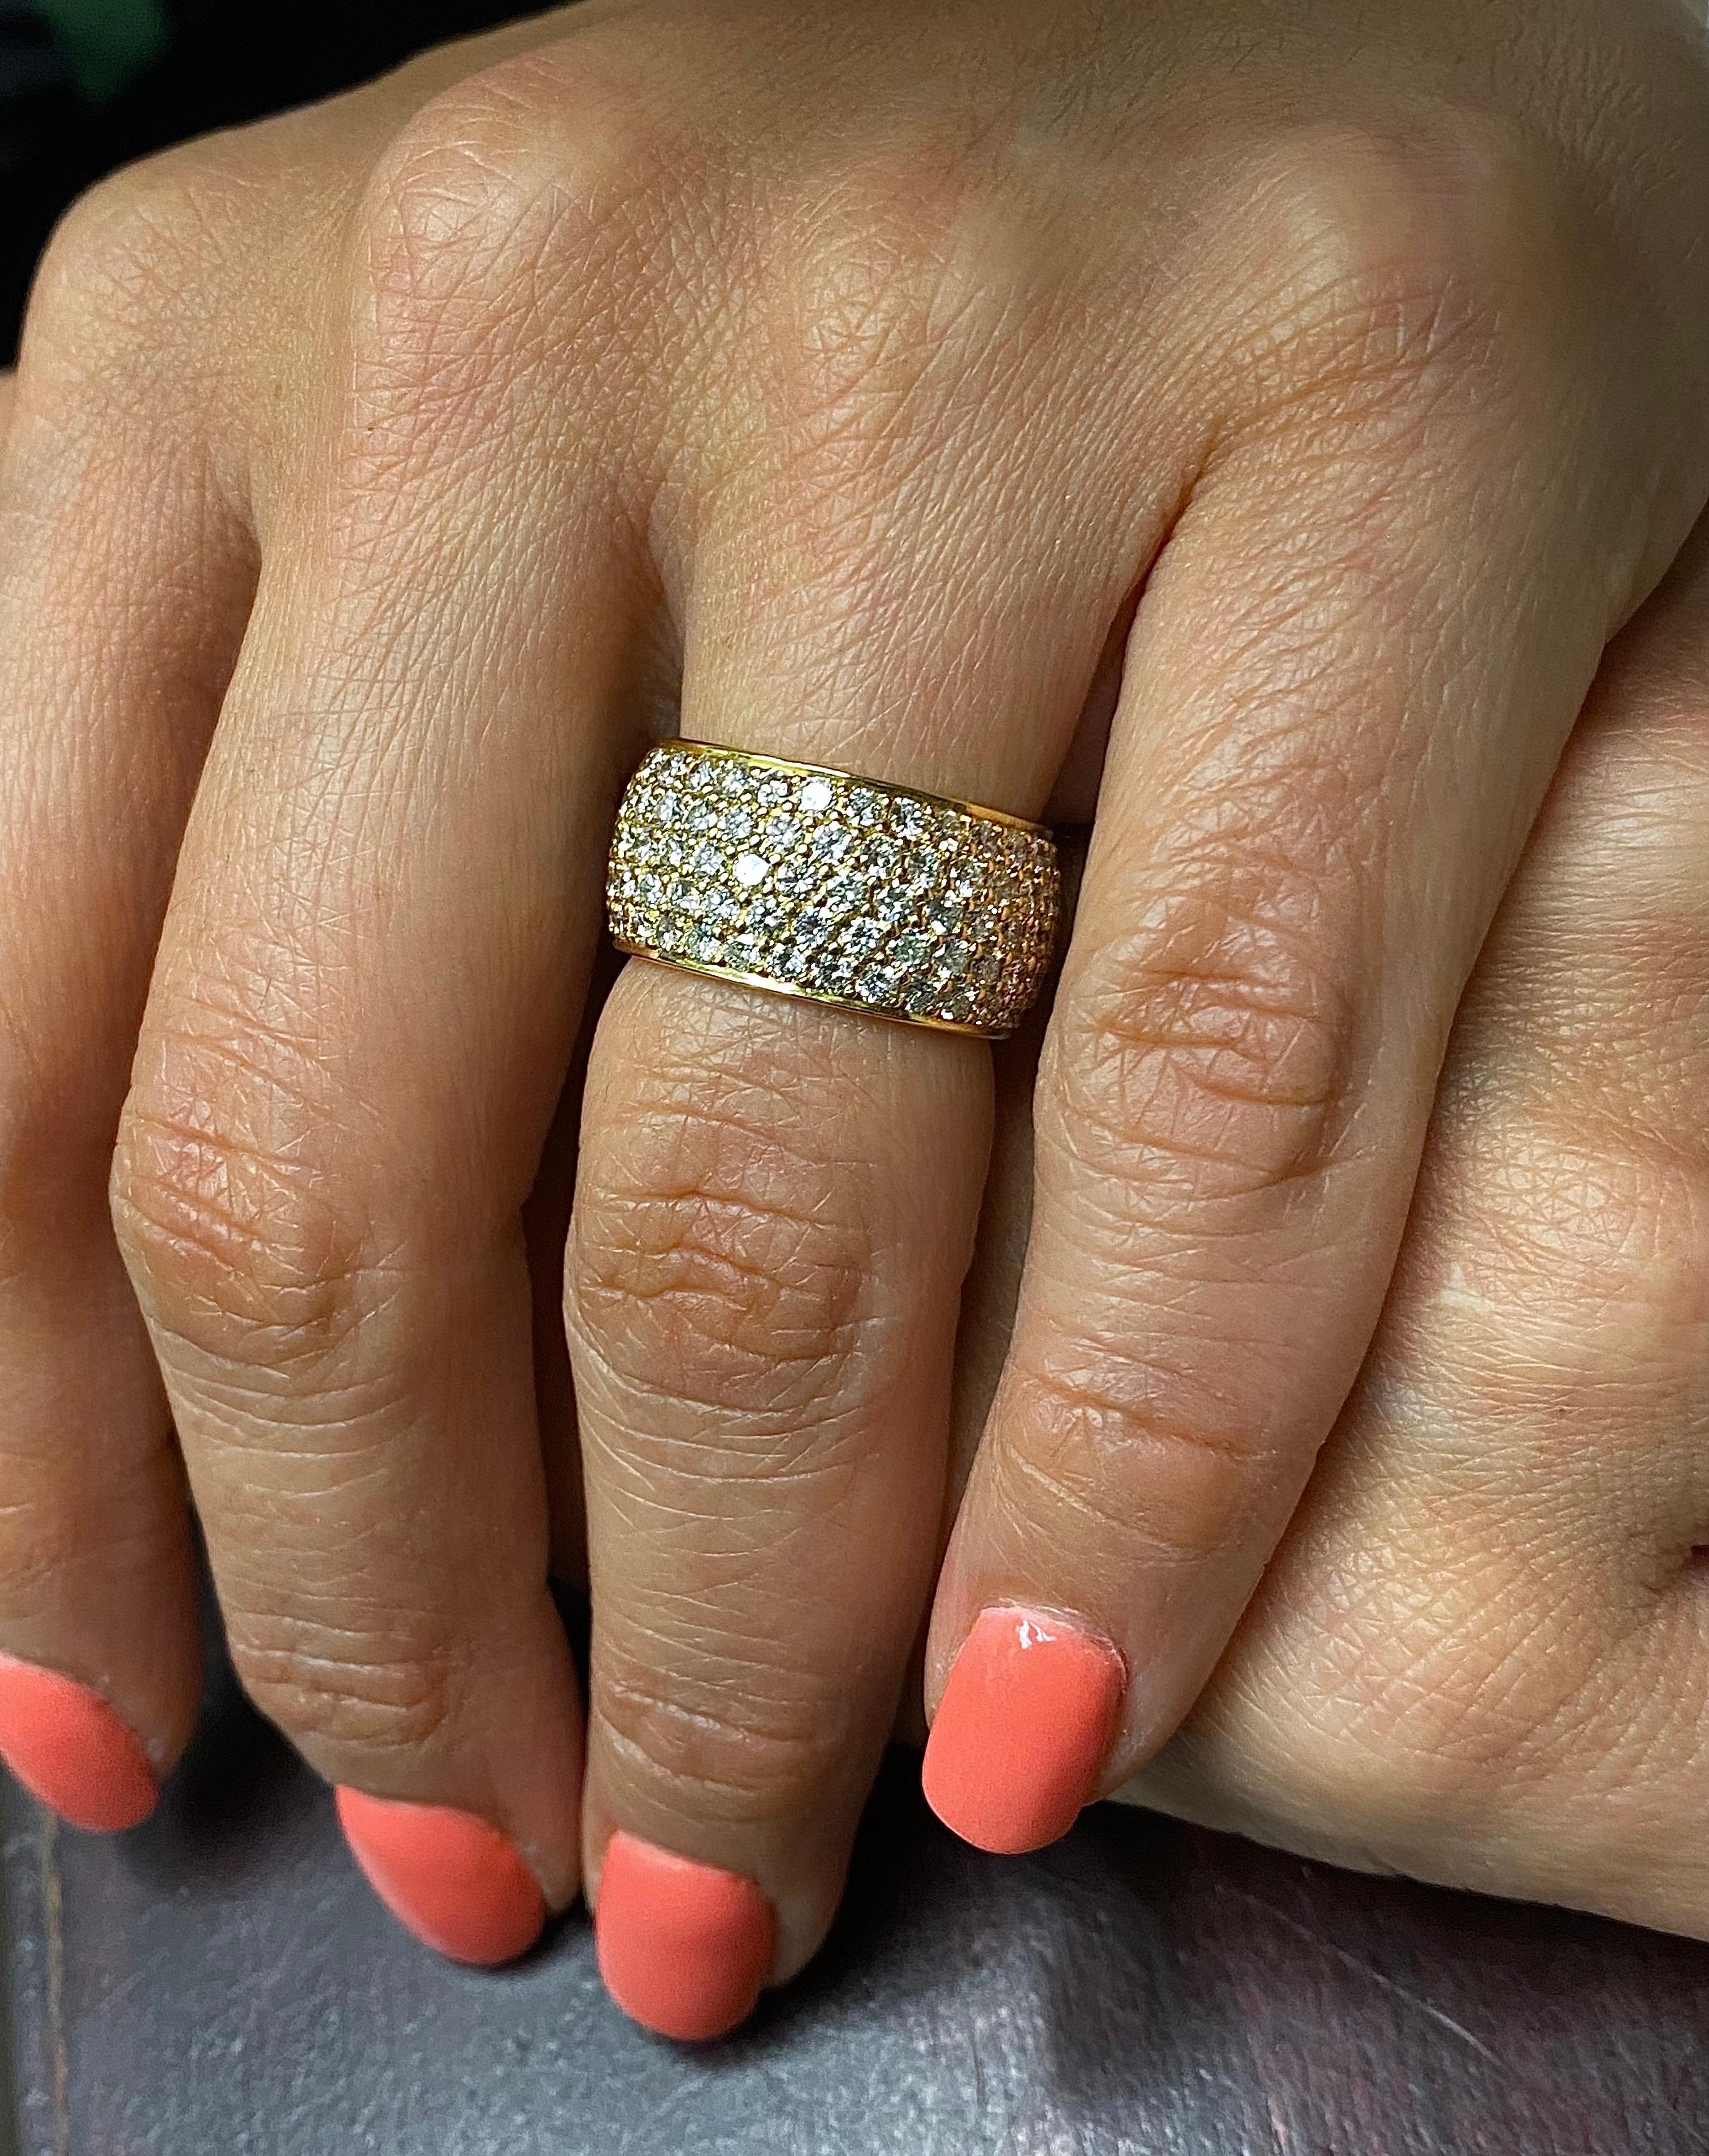 DeKara Designs Collection'S

Metall- 18K Gelbgold, .750.

Steine- 150 runde Diamanten F-G Farbe VS1-VS2 Reinheit, 6,02 Karat.

Fühlen Sie sich wie ein Aristokrat!

Ein einzigartiges, elegantes und künstlerisch gestaltetes, fünfreihiges Diamantband